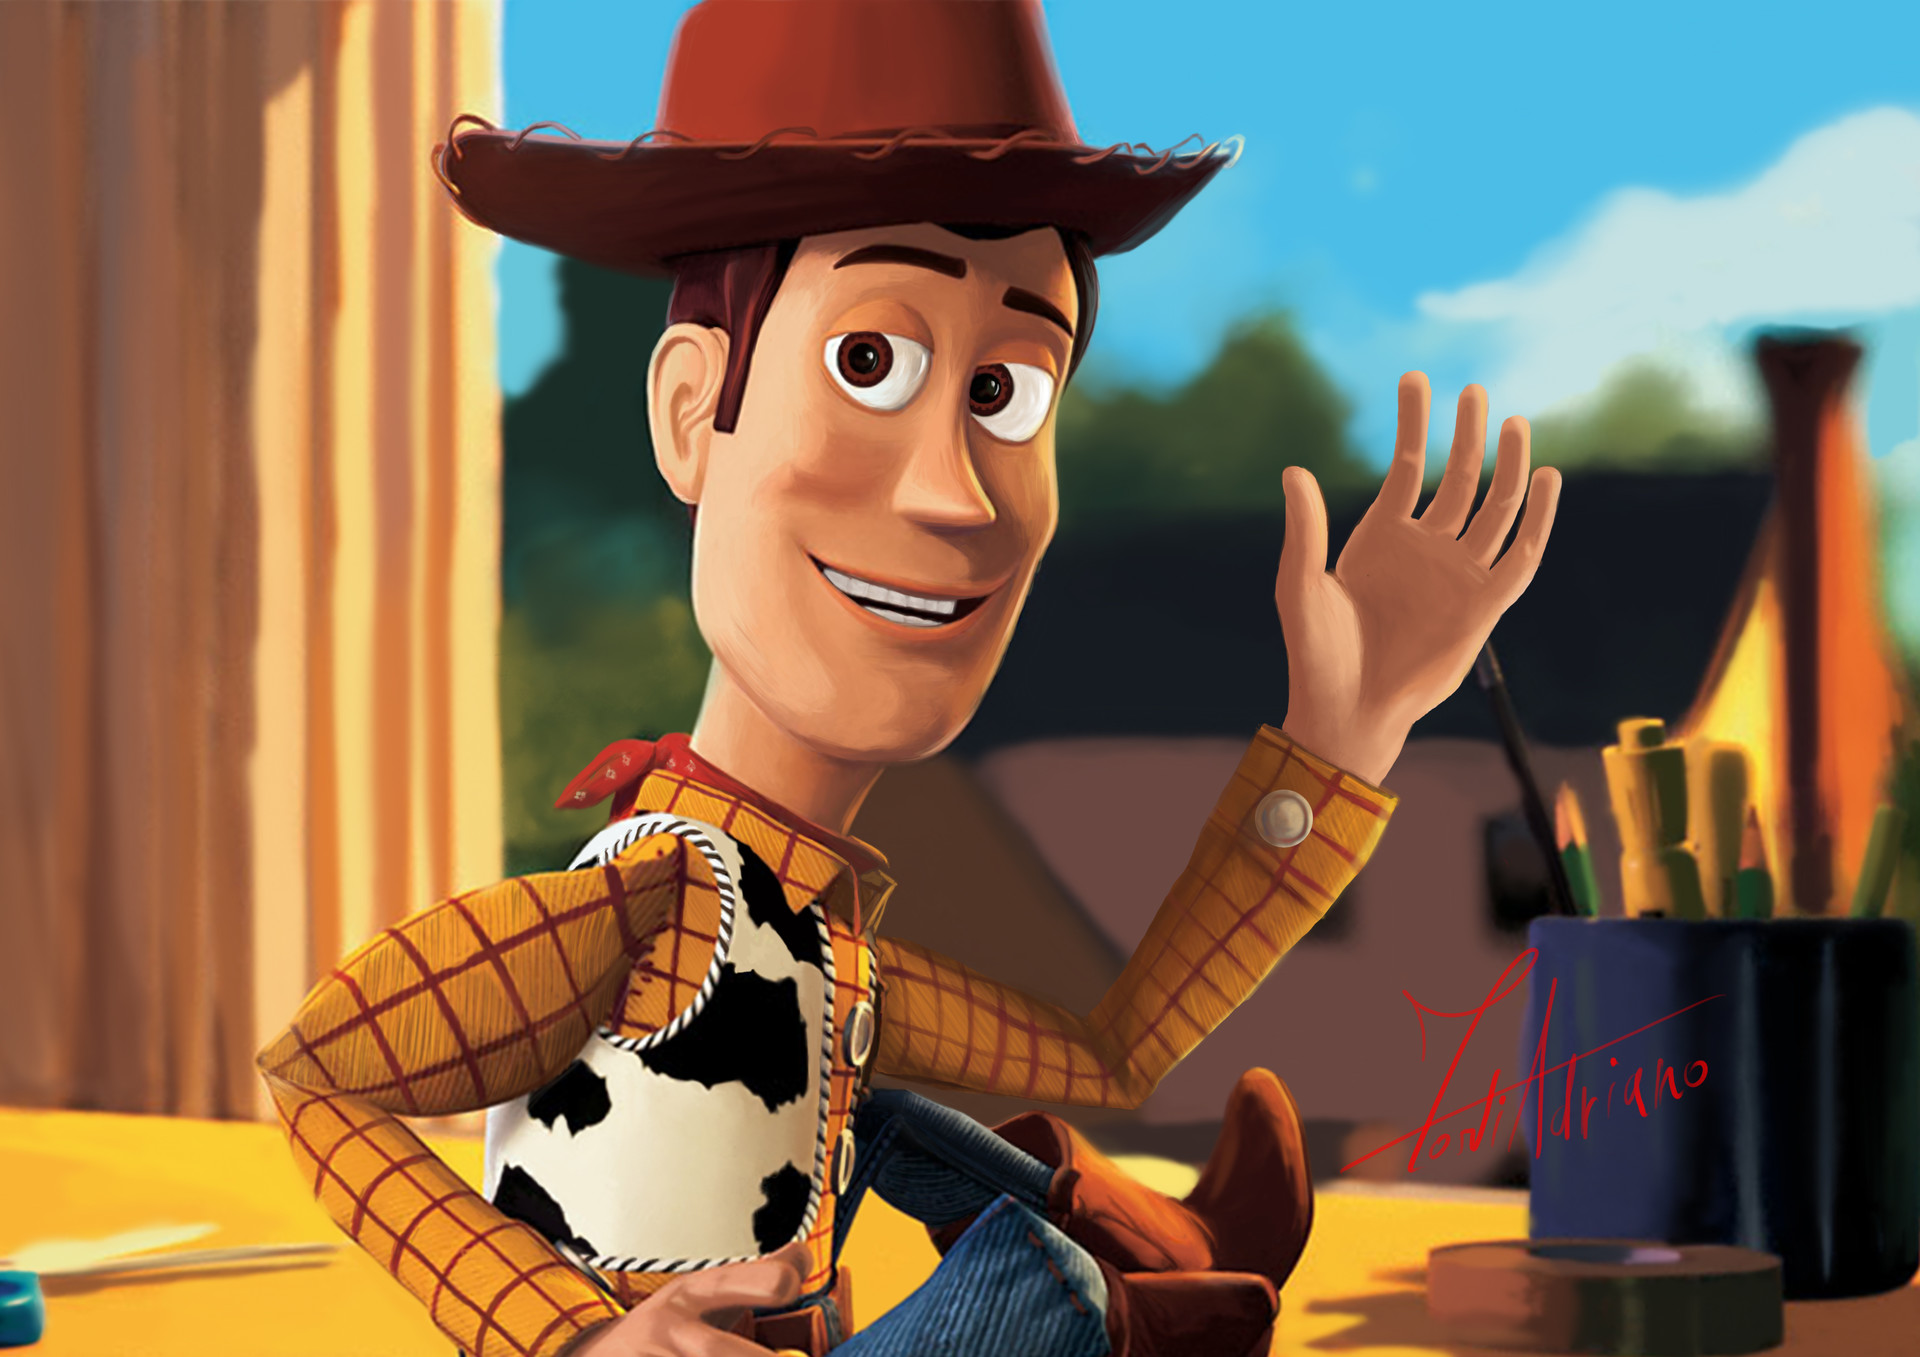 ArtStation - "Goodbye, Woody" | Toy Story Fan Art, Adriano Forti